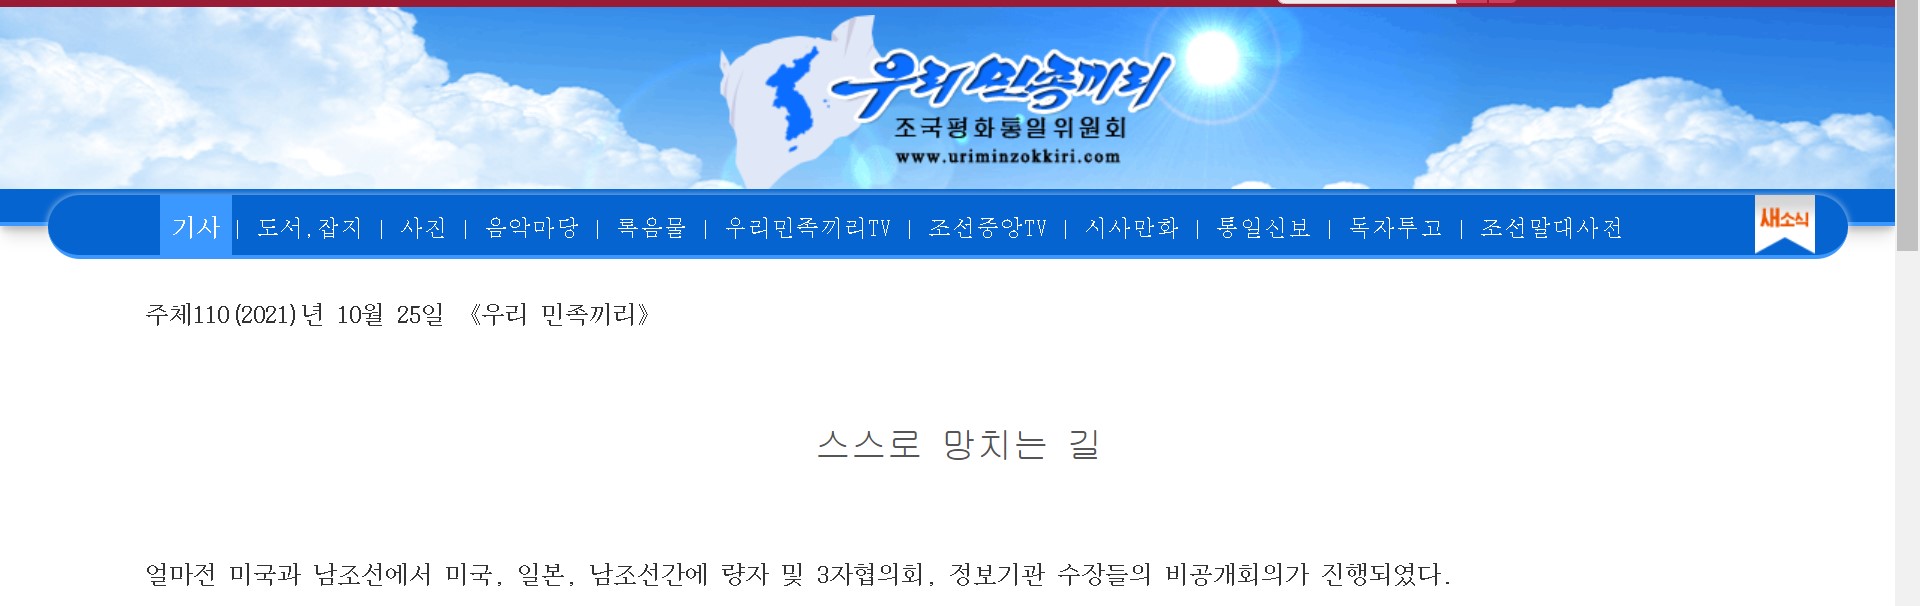 북한 대외선전매체 ‘우리민족끼리’